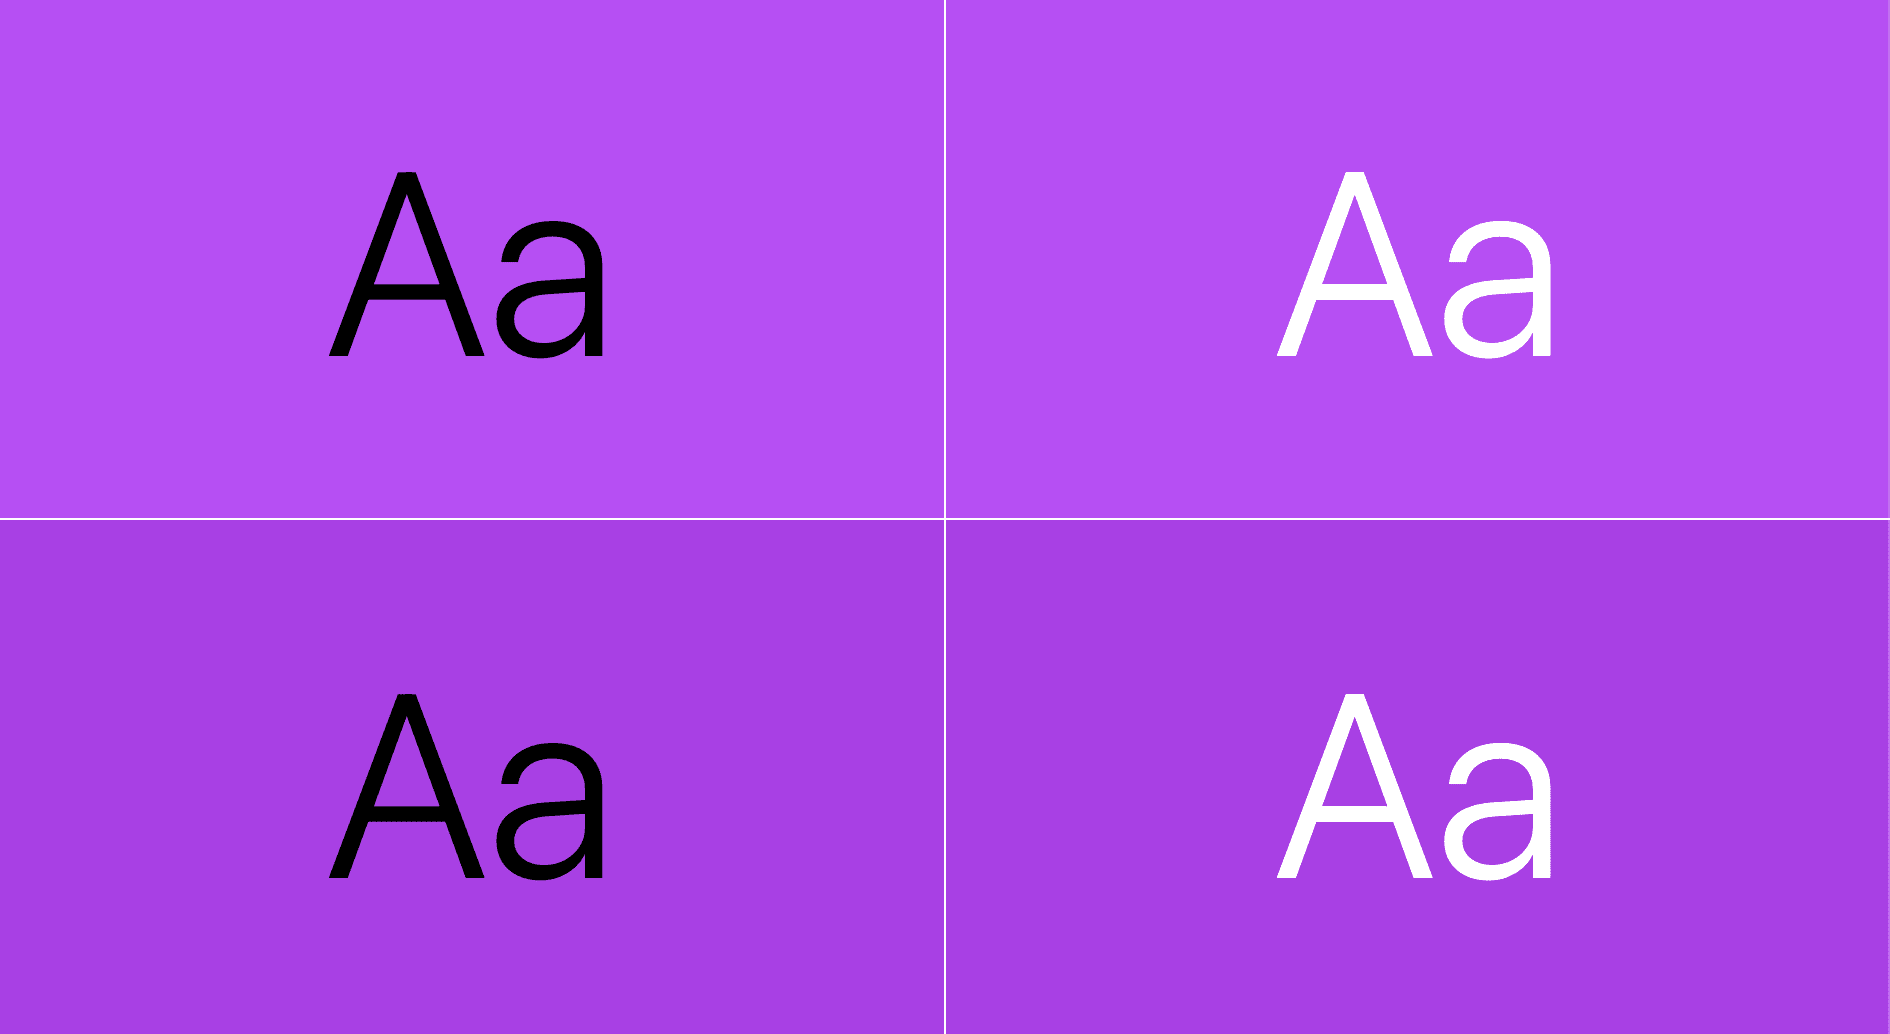 Текст отображается поверх фиолетового цвета: одна пара — черный текст поверх фиолетового, а другая — белый текст поверх фиолетового.